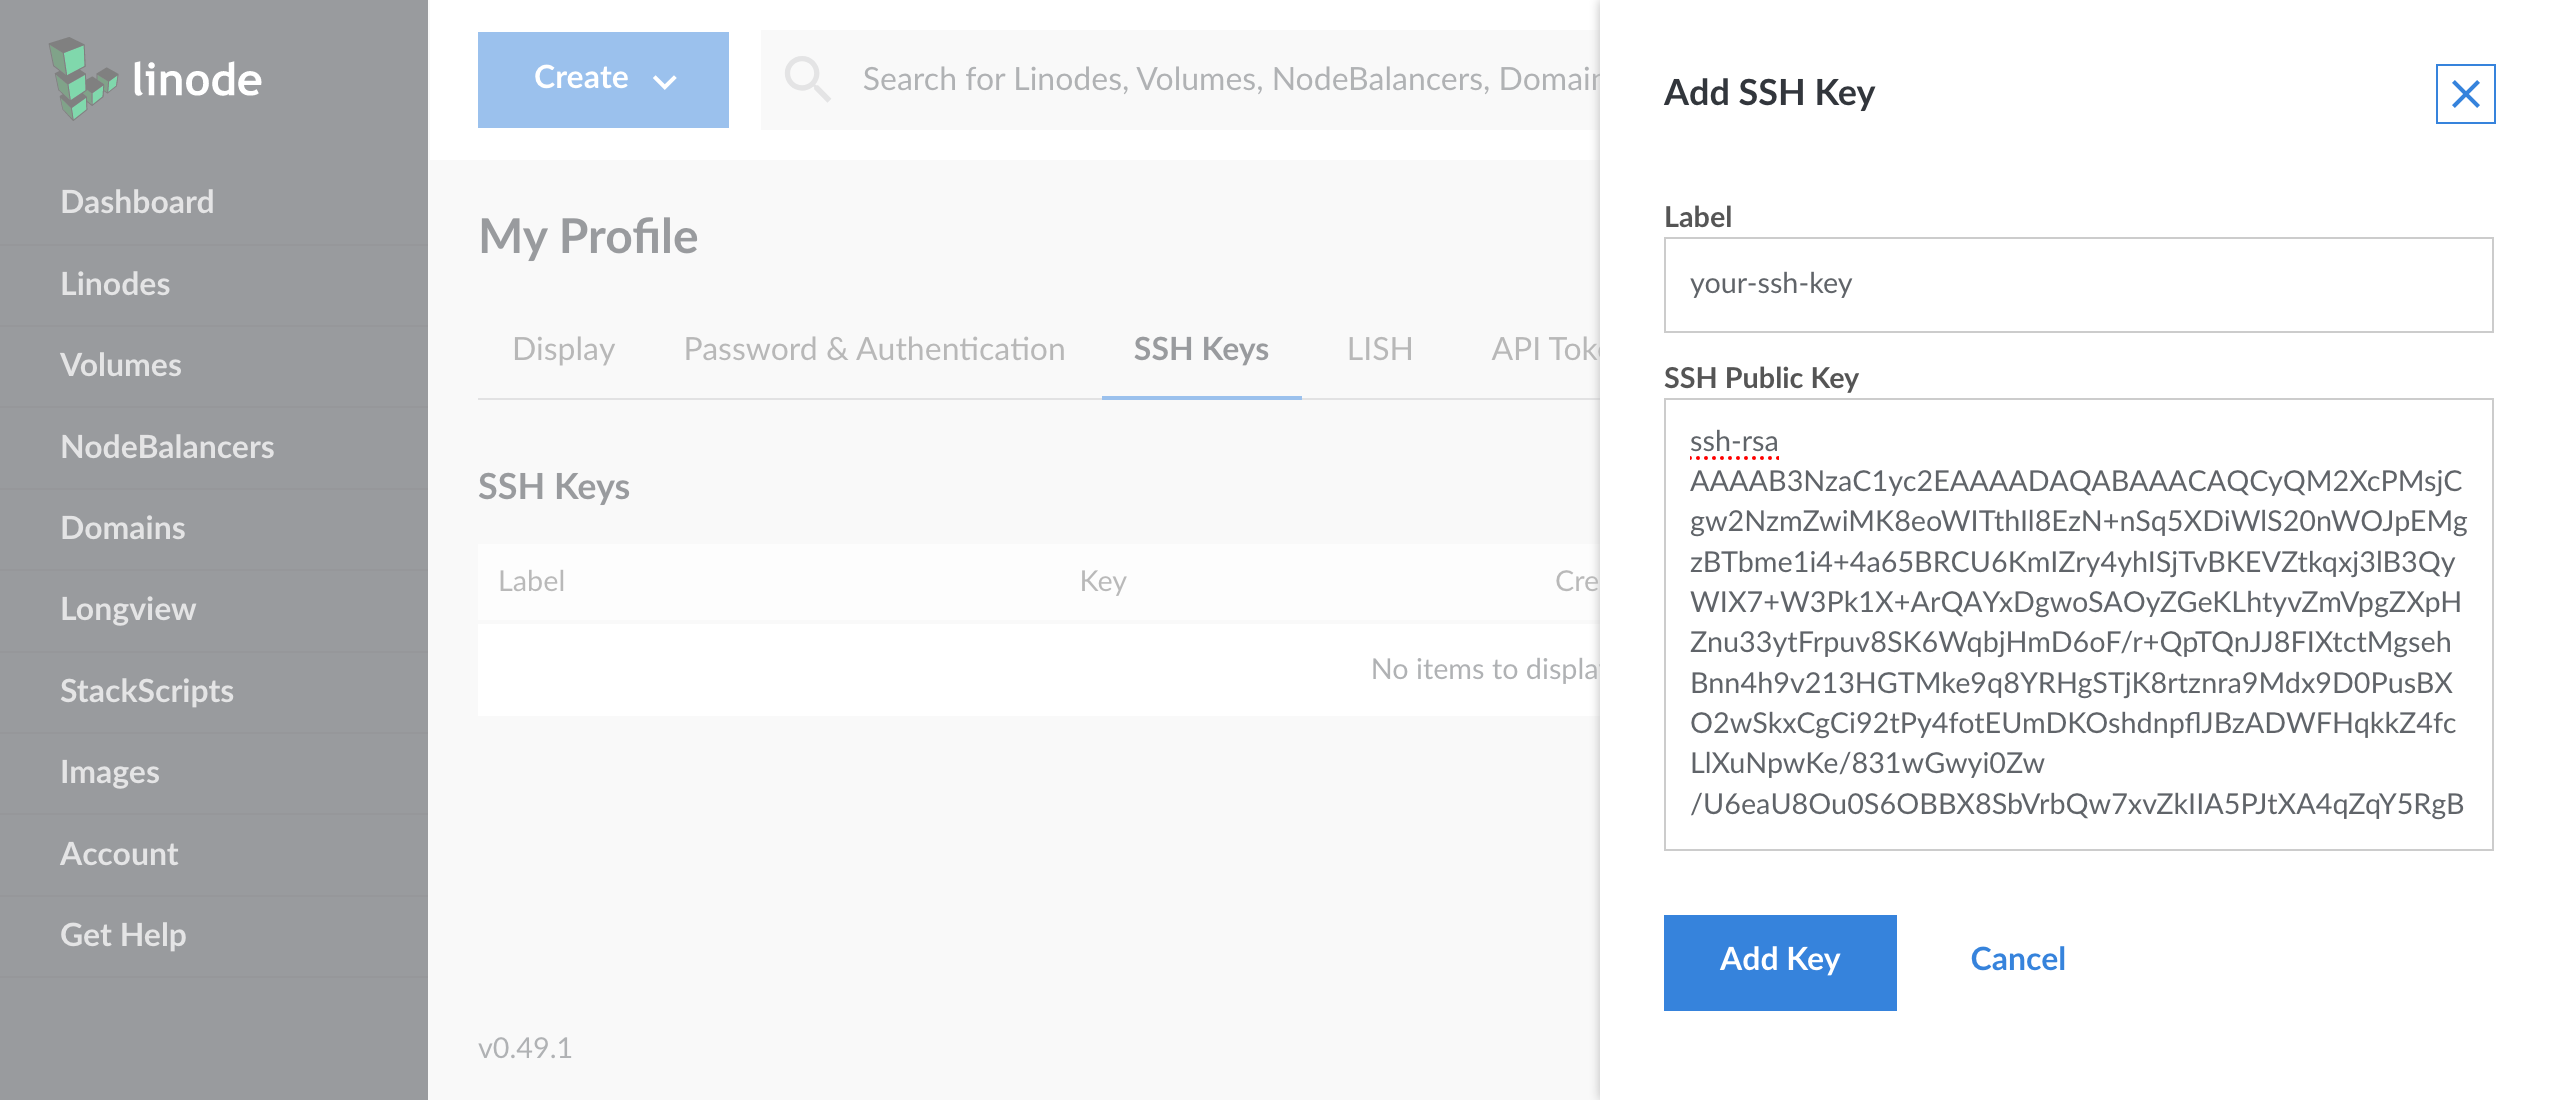 Add SSH Key form